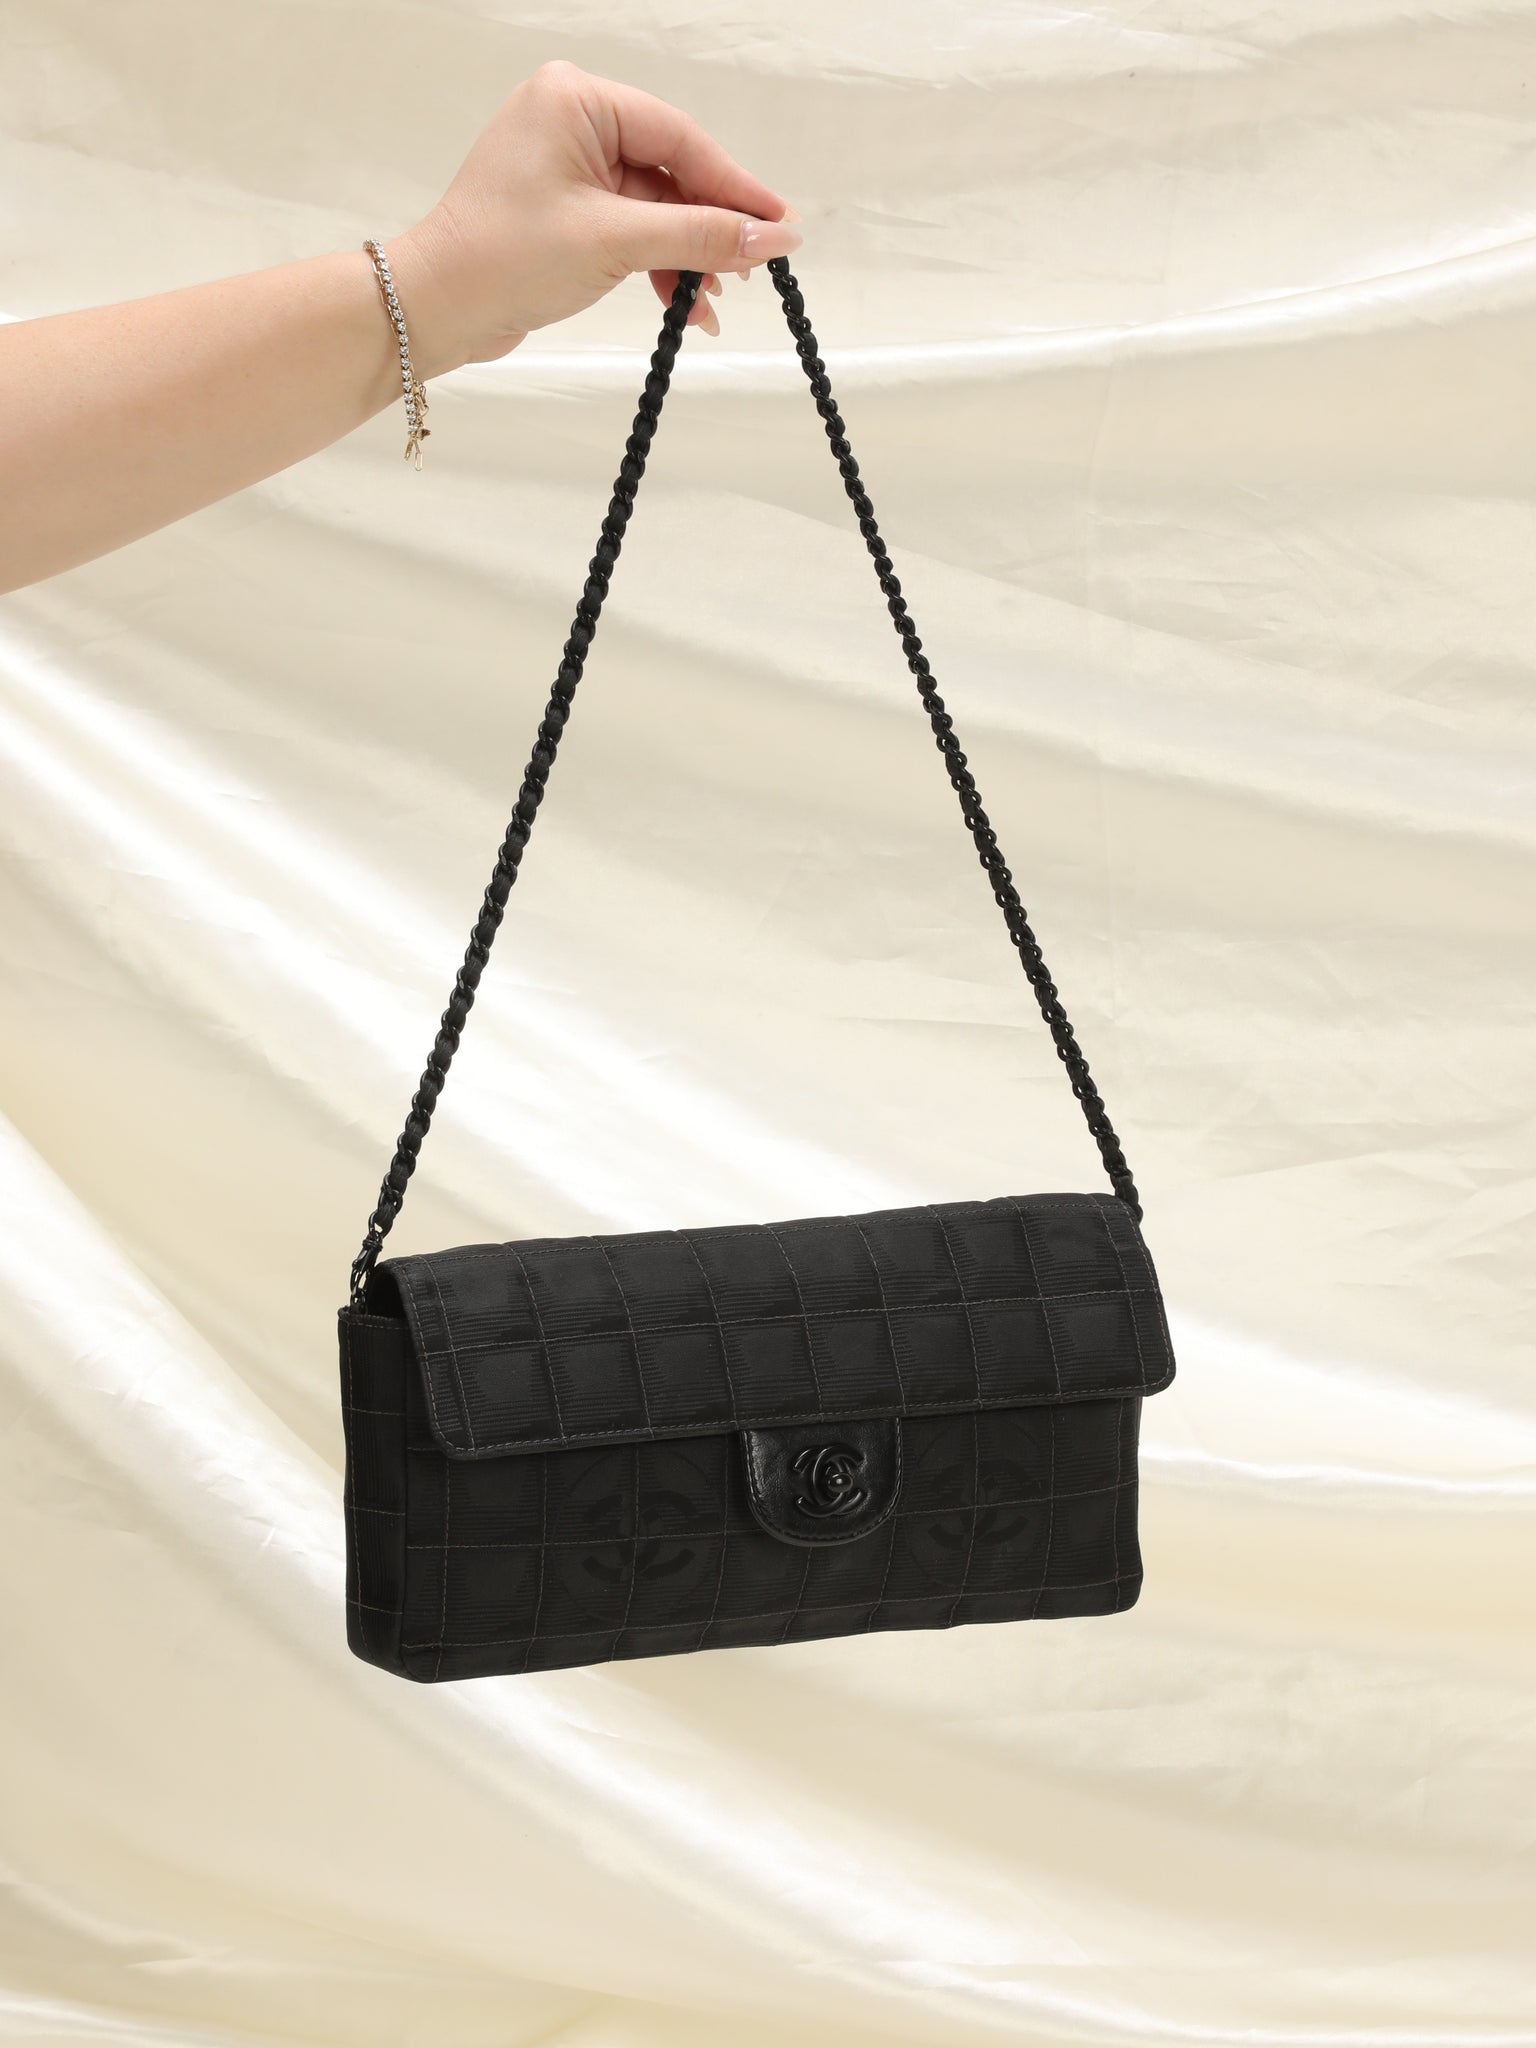 Rare Chanel Chocolate Bar Bag – SFN